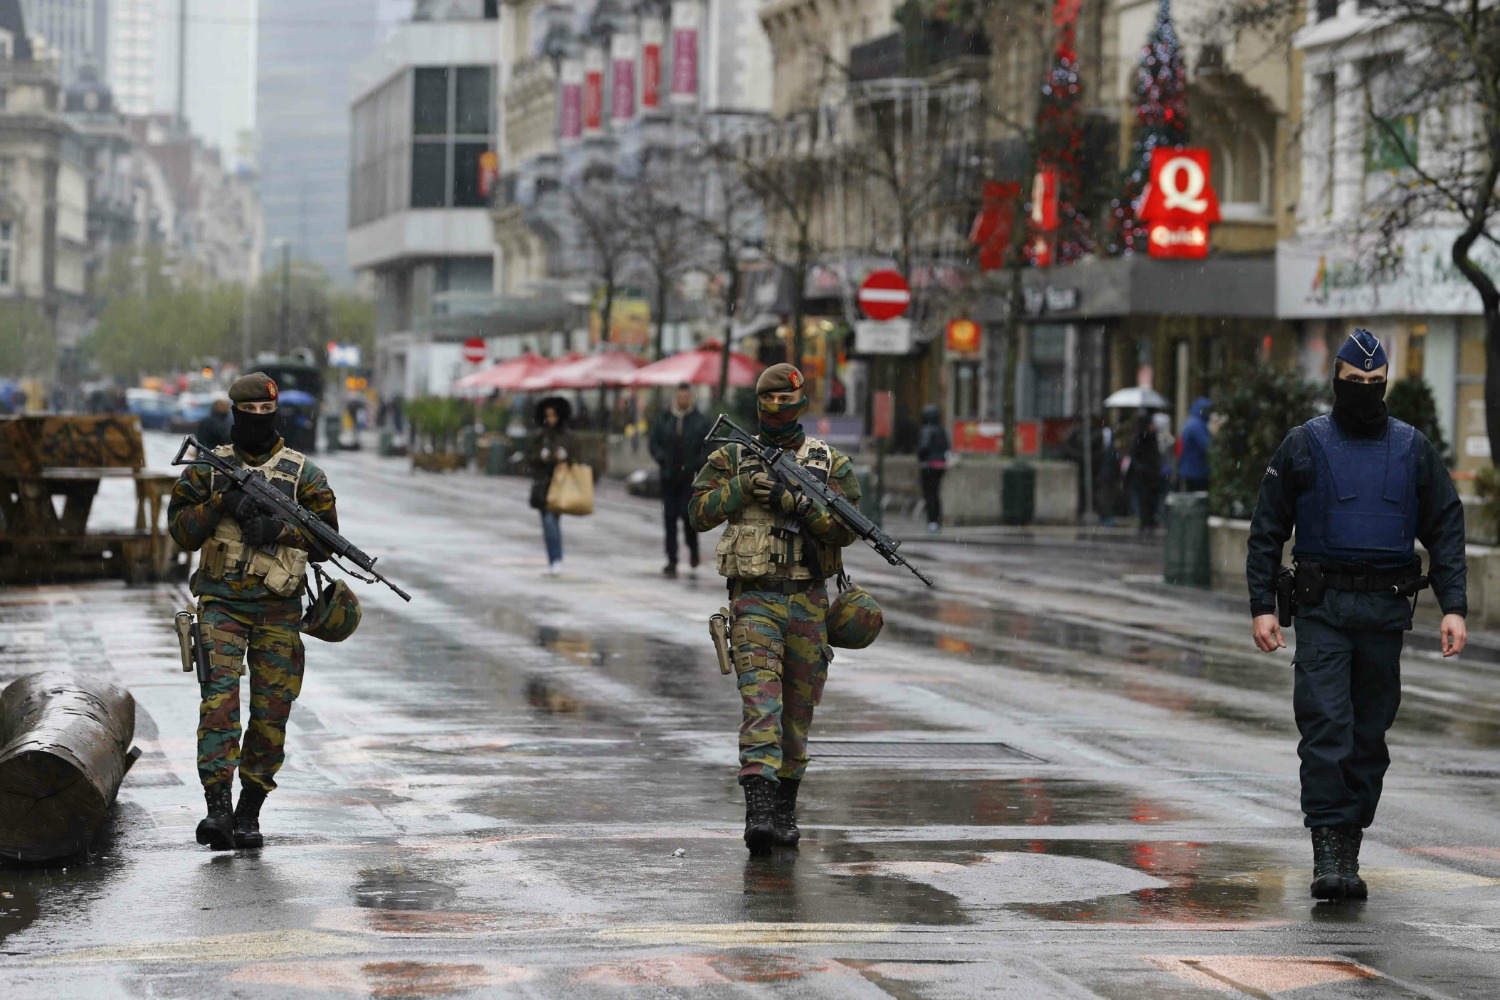 Bruselas en estado de máxima alerta por atentado inminente